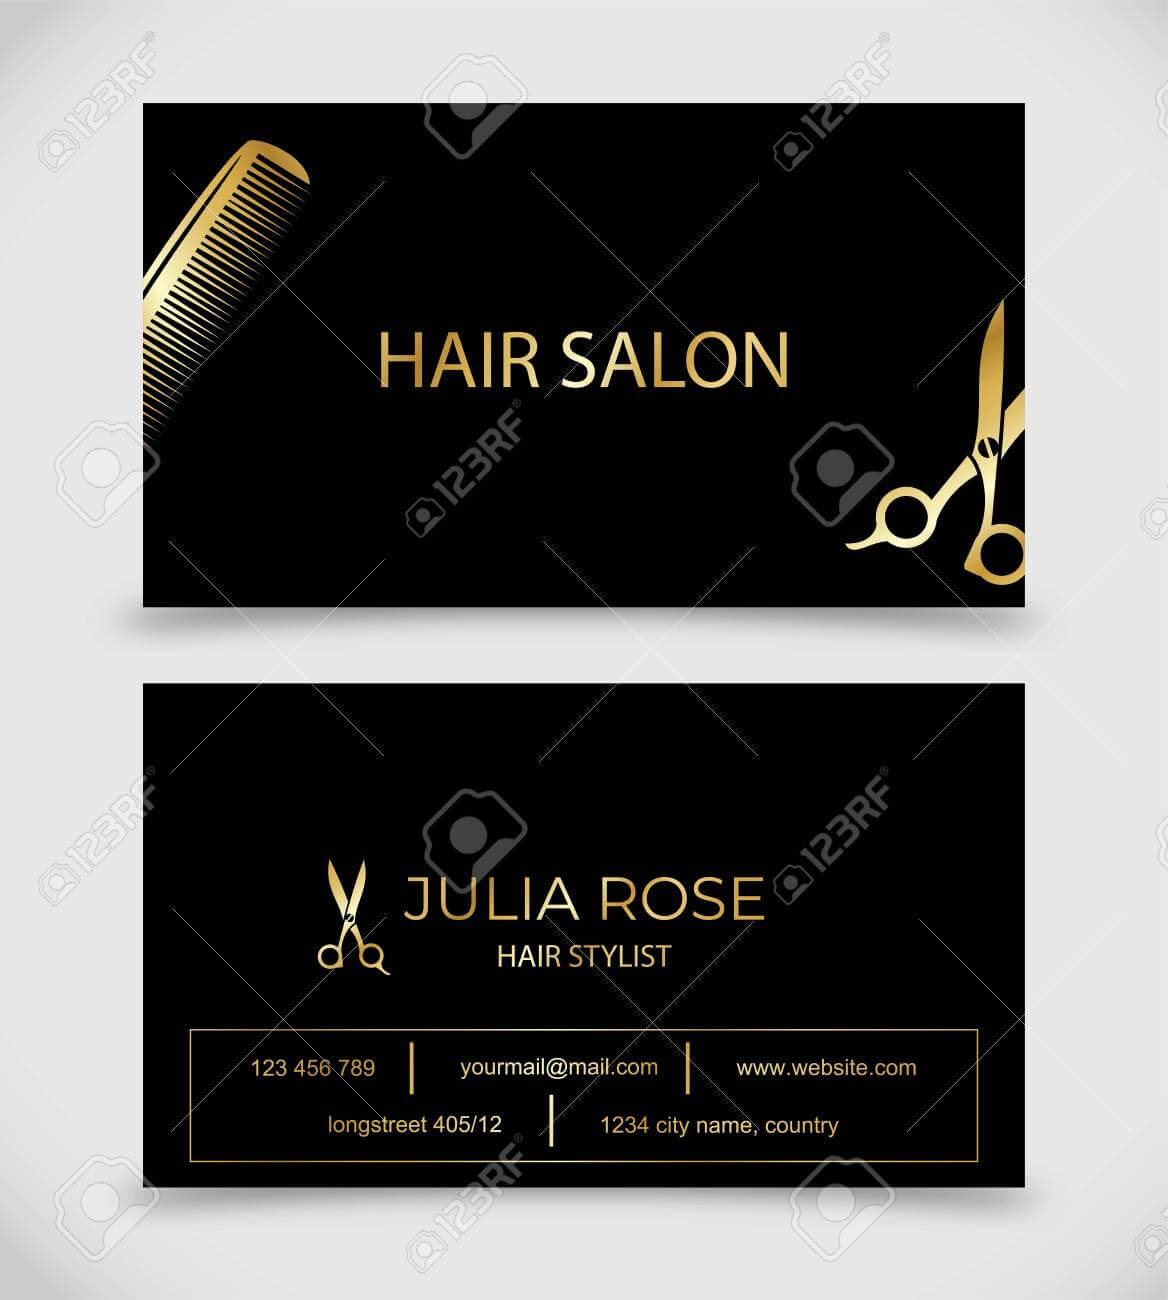 Hair Salon, Hair Stylist Business Card Vector Template Inside Hair Salon Business Card Template